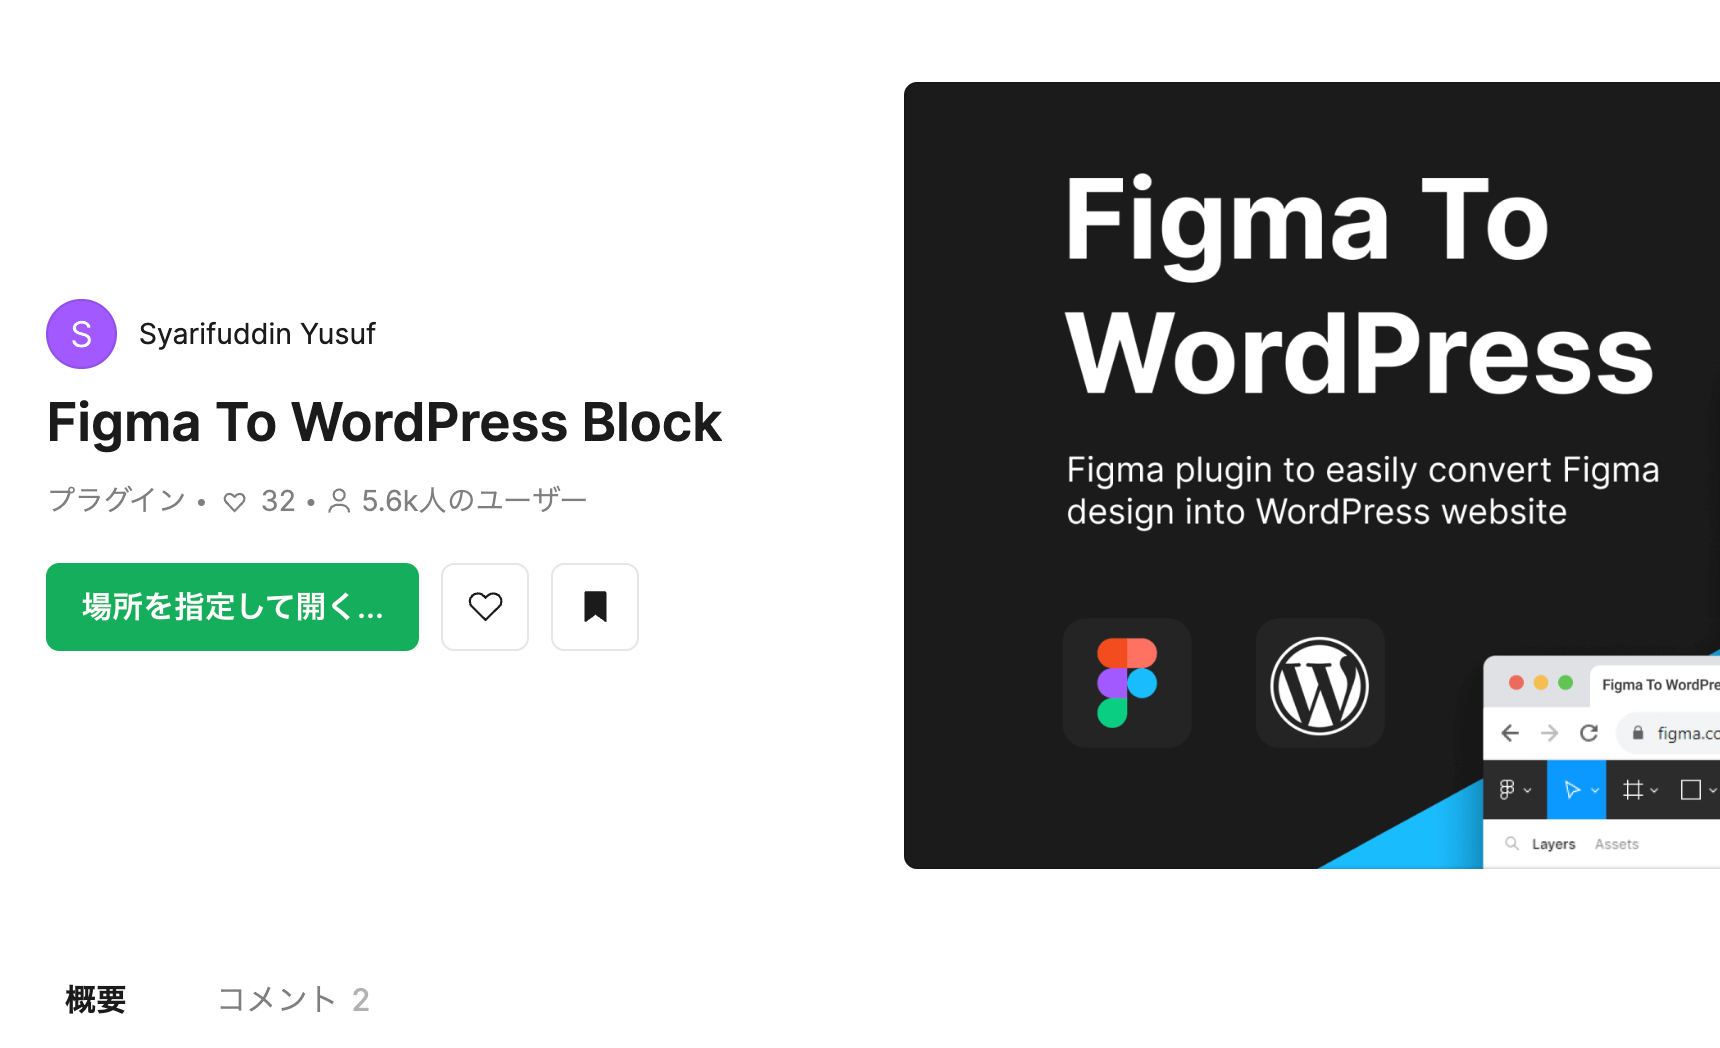 「Figma To WordPress Block」の使い方 1.Figmaに「Figma To WordPress Block」をインストールする